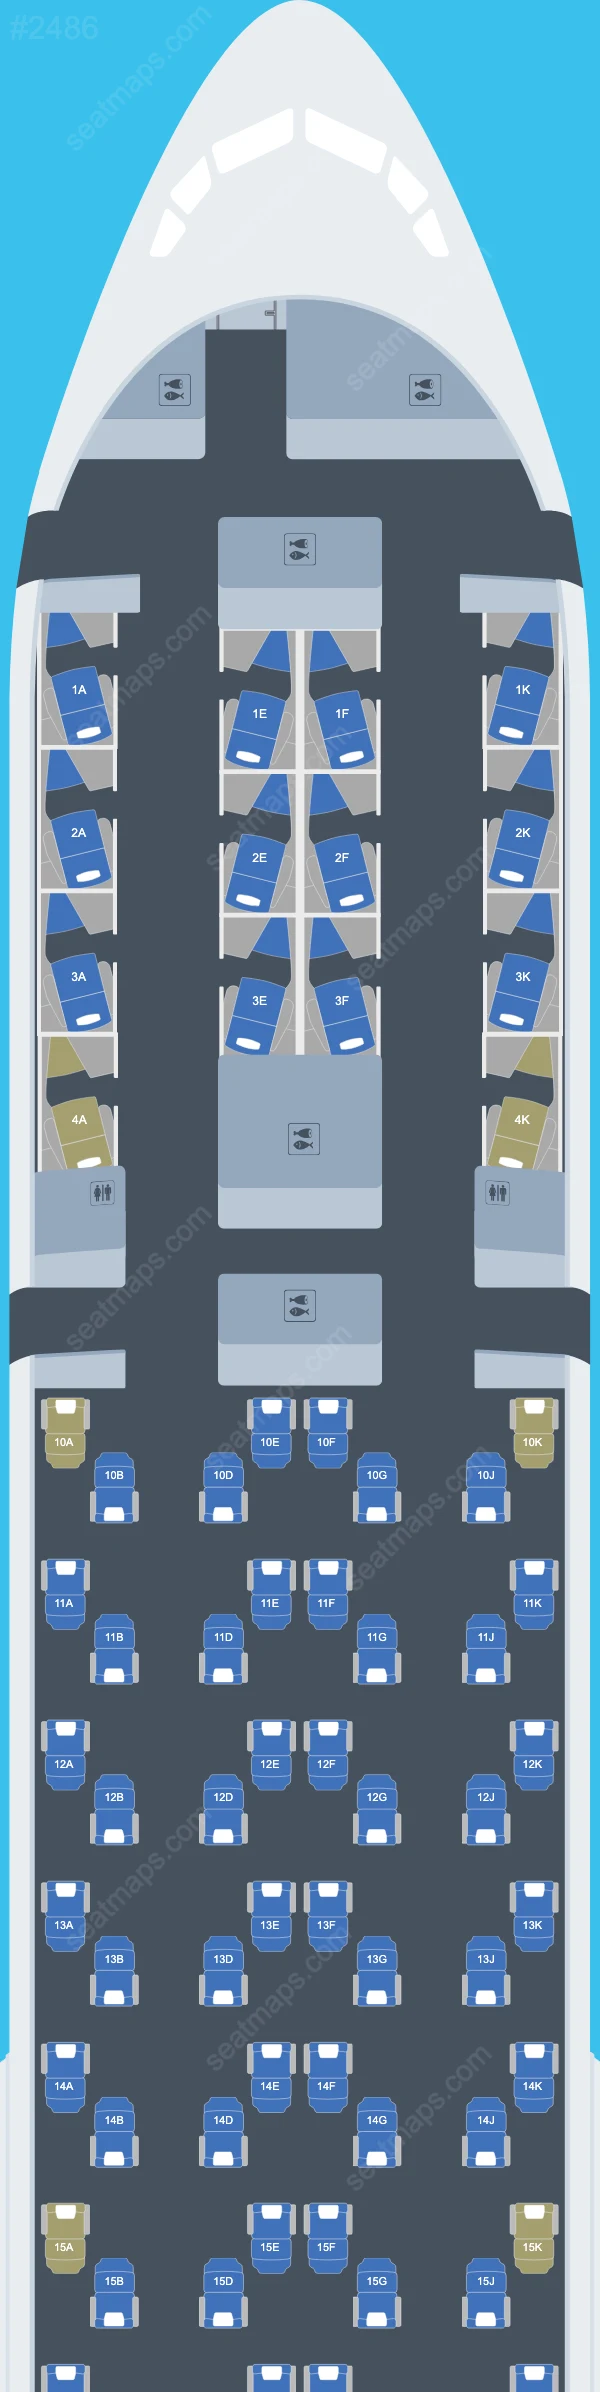 British Airways Boeing 777 Seat Maps 777-300 ER V.2